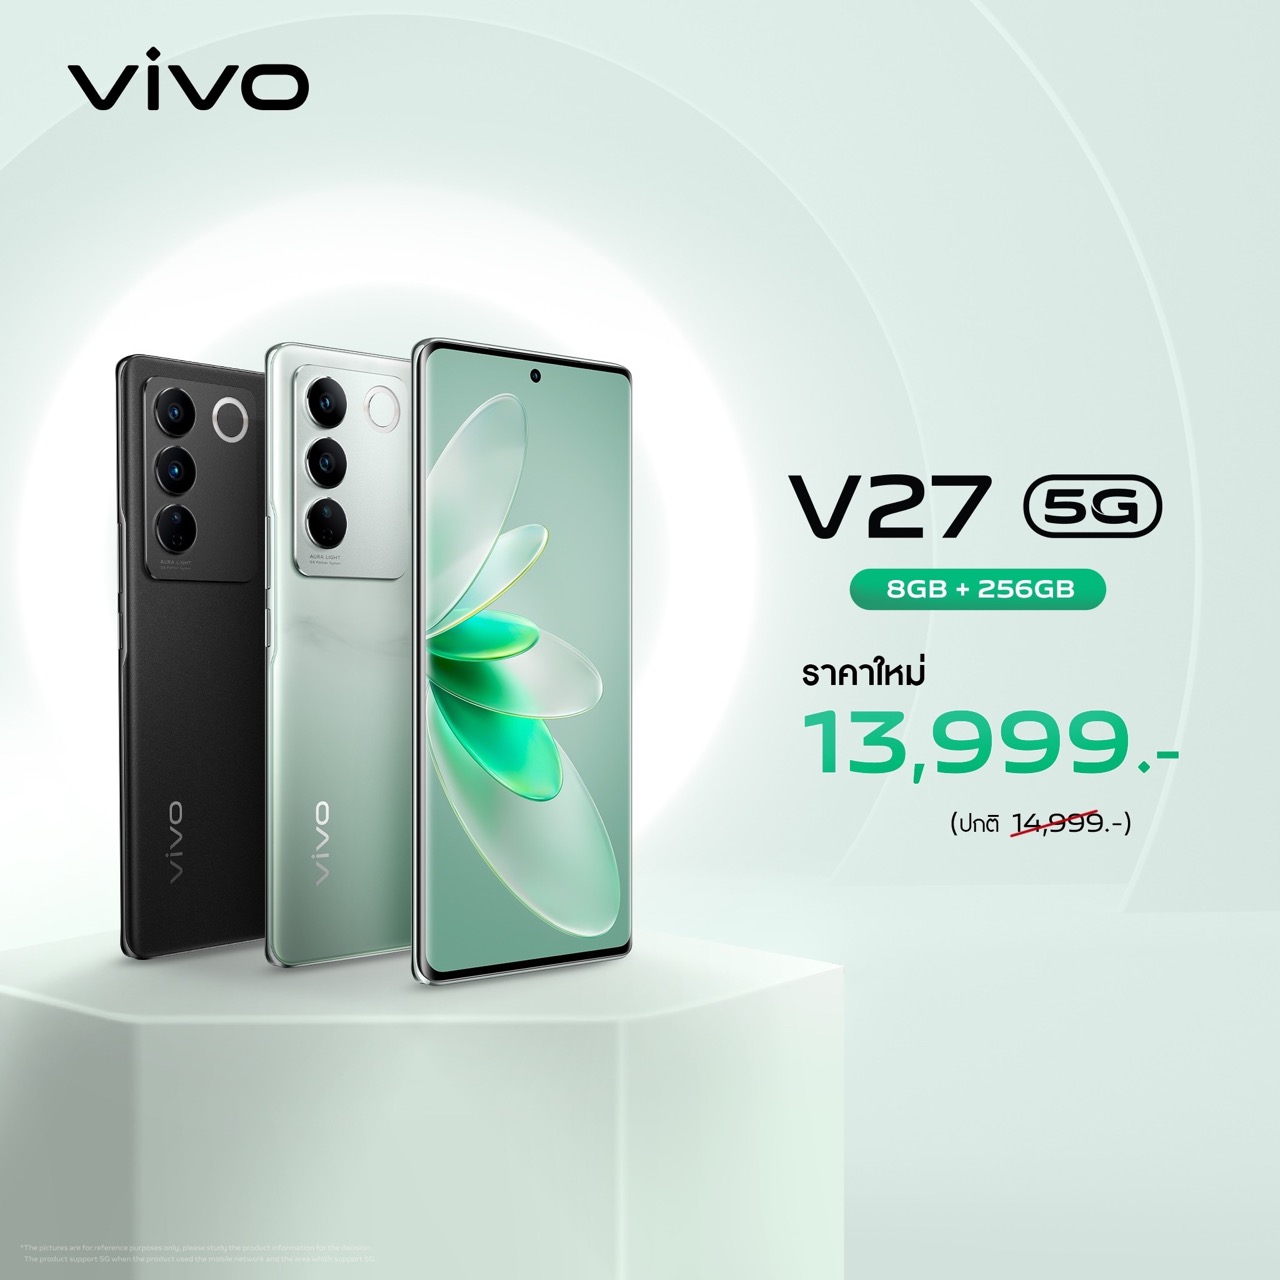 V27 5G Price Reduction KV Large